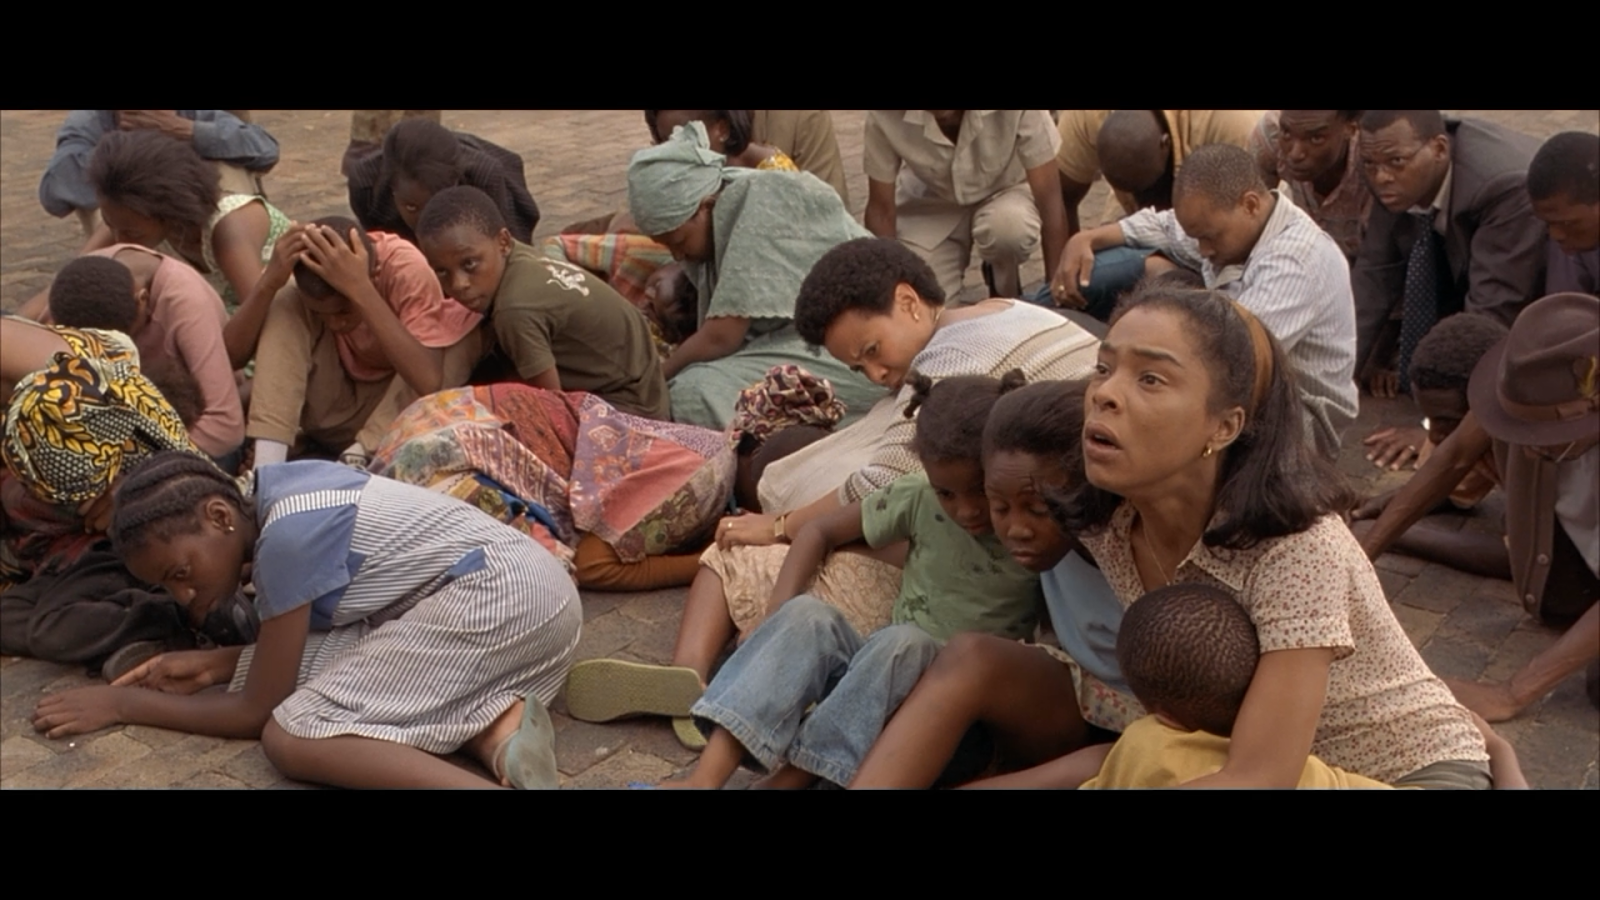 Hotel Rwanda (2004) - AoM: Movies et al. - Hotel Rwanda Or The Tutsi Genocide As Seen By Hollywood